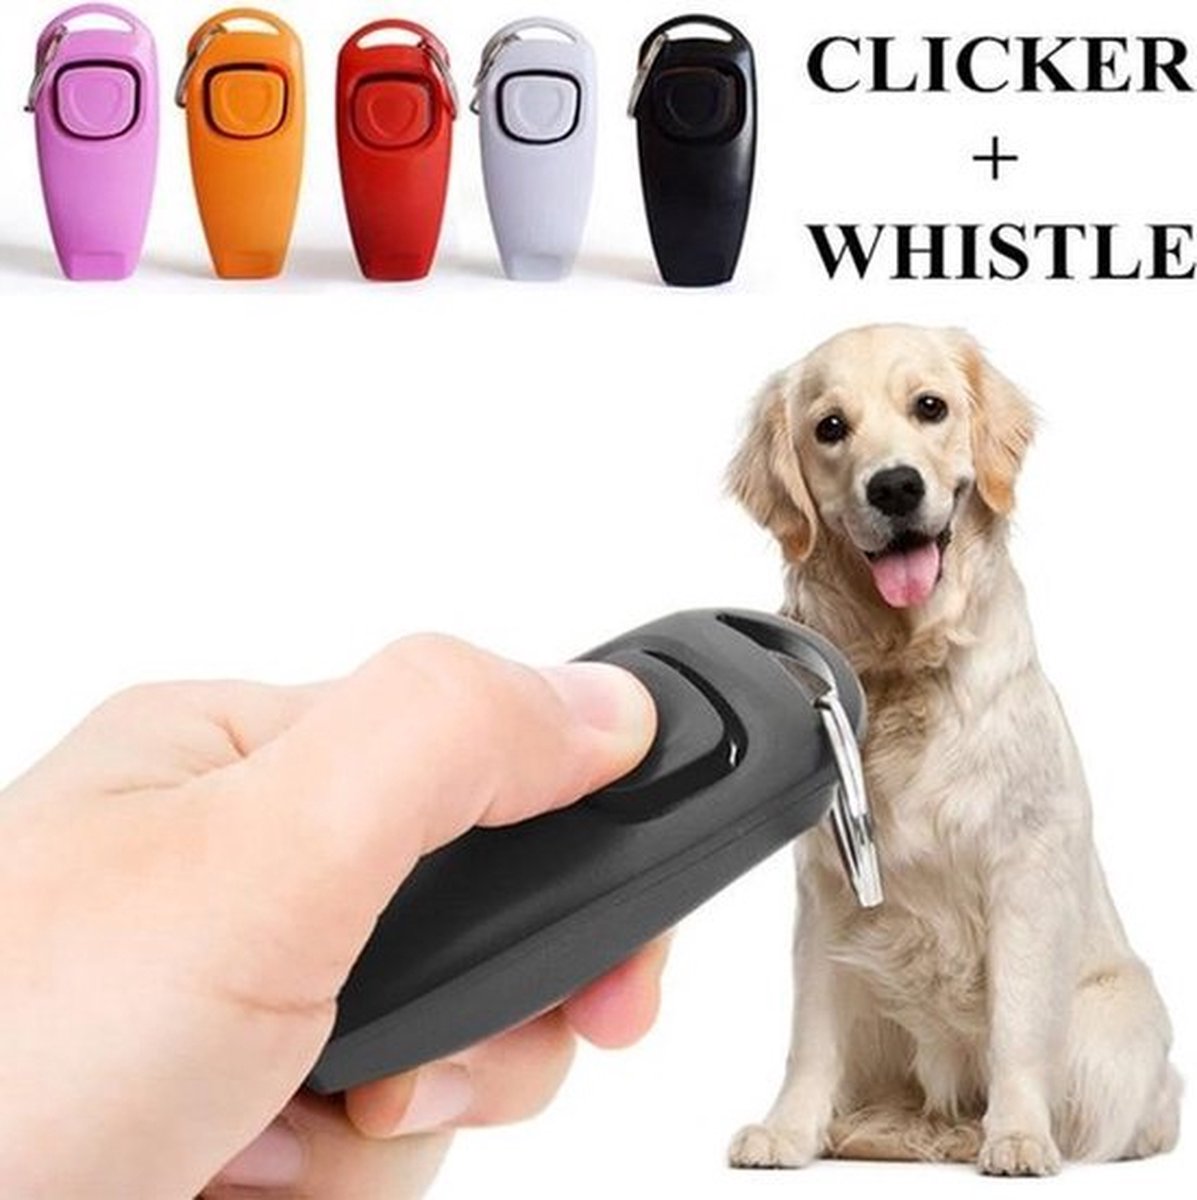 Clicker met fluit - Honden clicker voor training - RVS - Zwart - 1 st - Merkloos